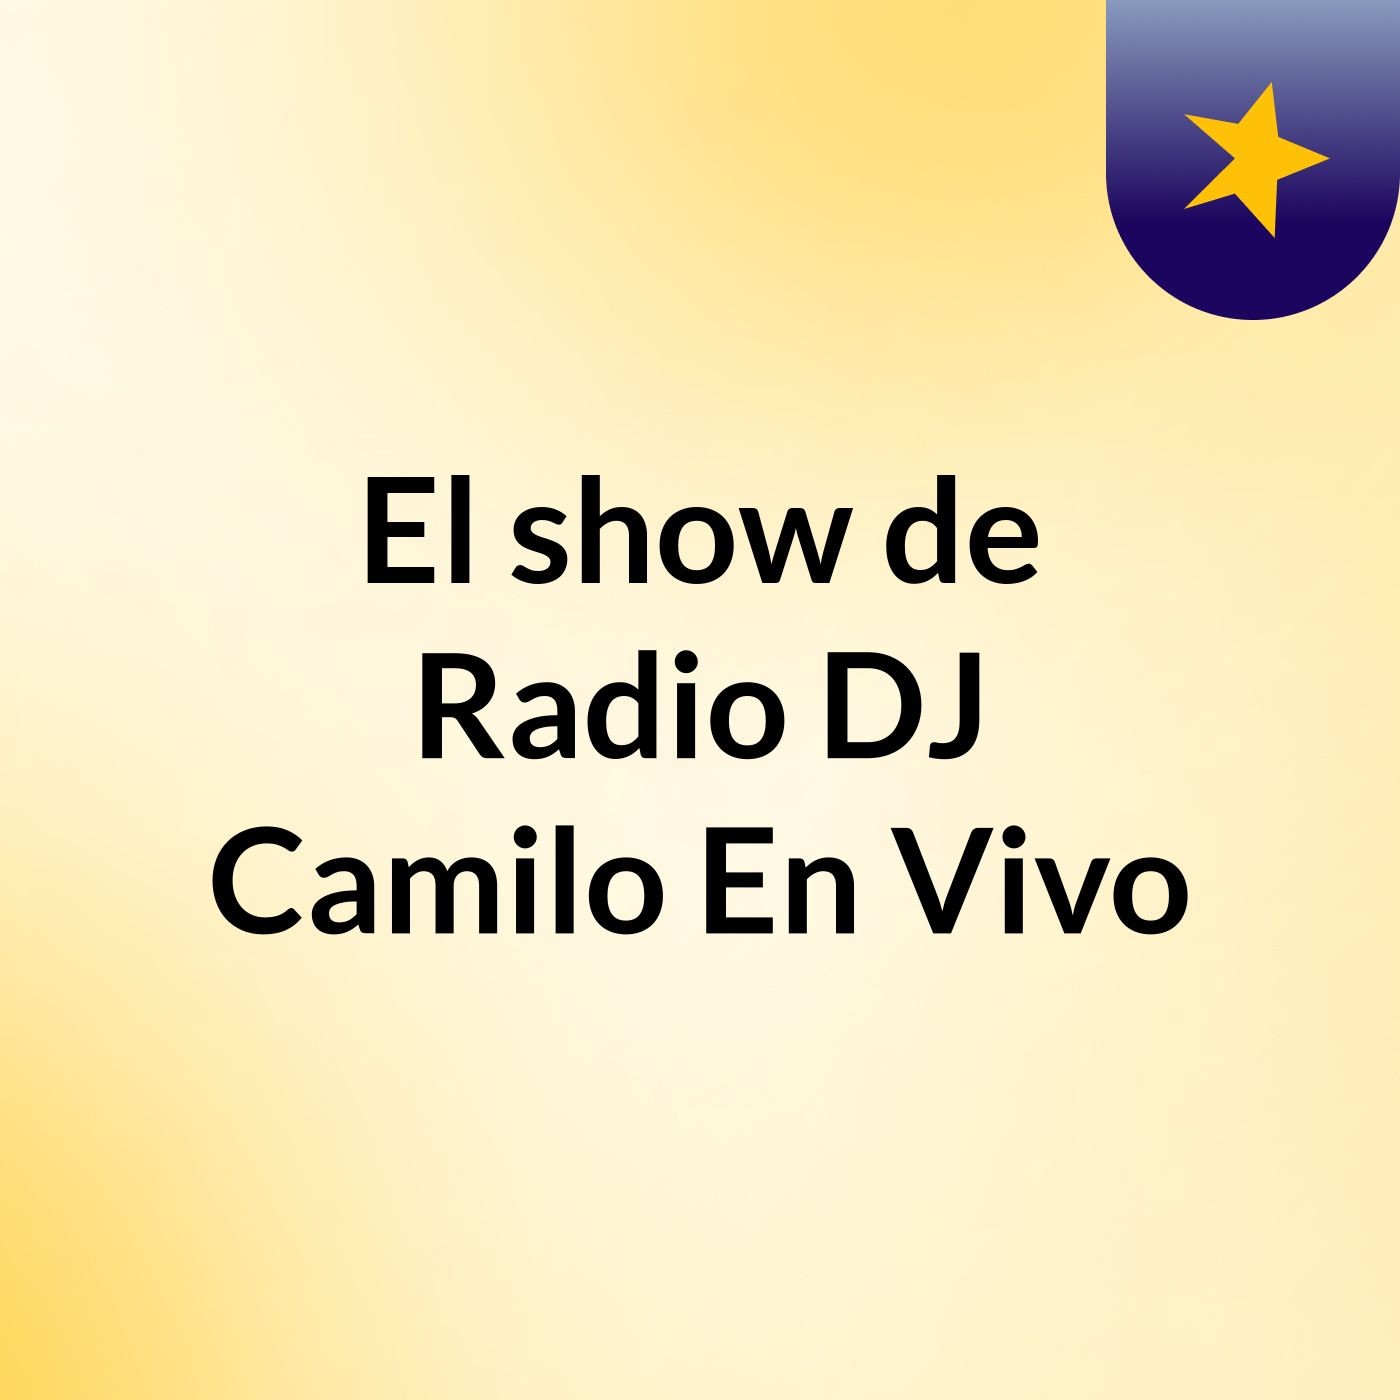 Episodio 2 - El show de Radio DJ Camilo En Vivo